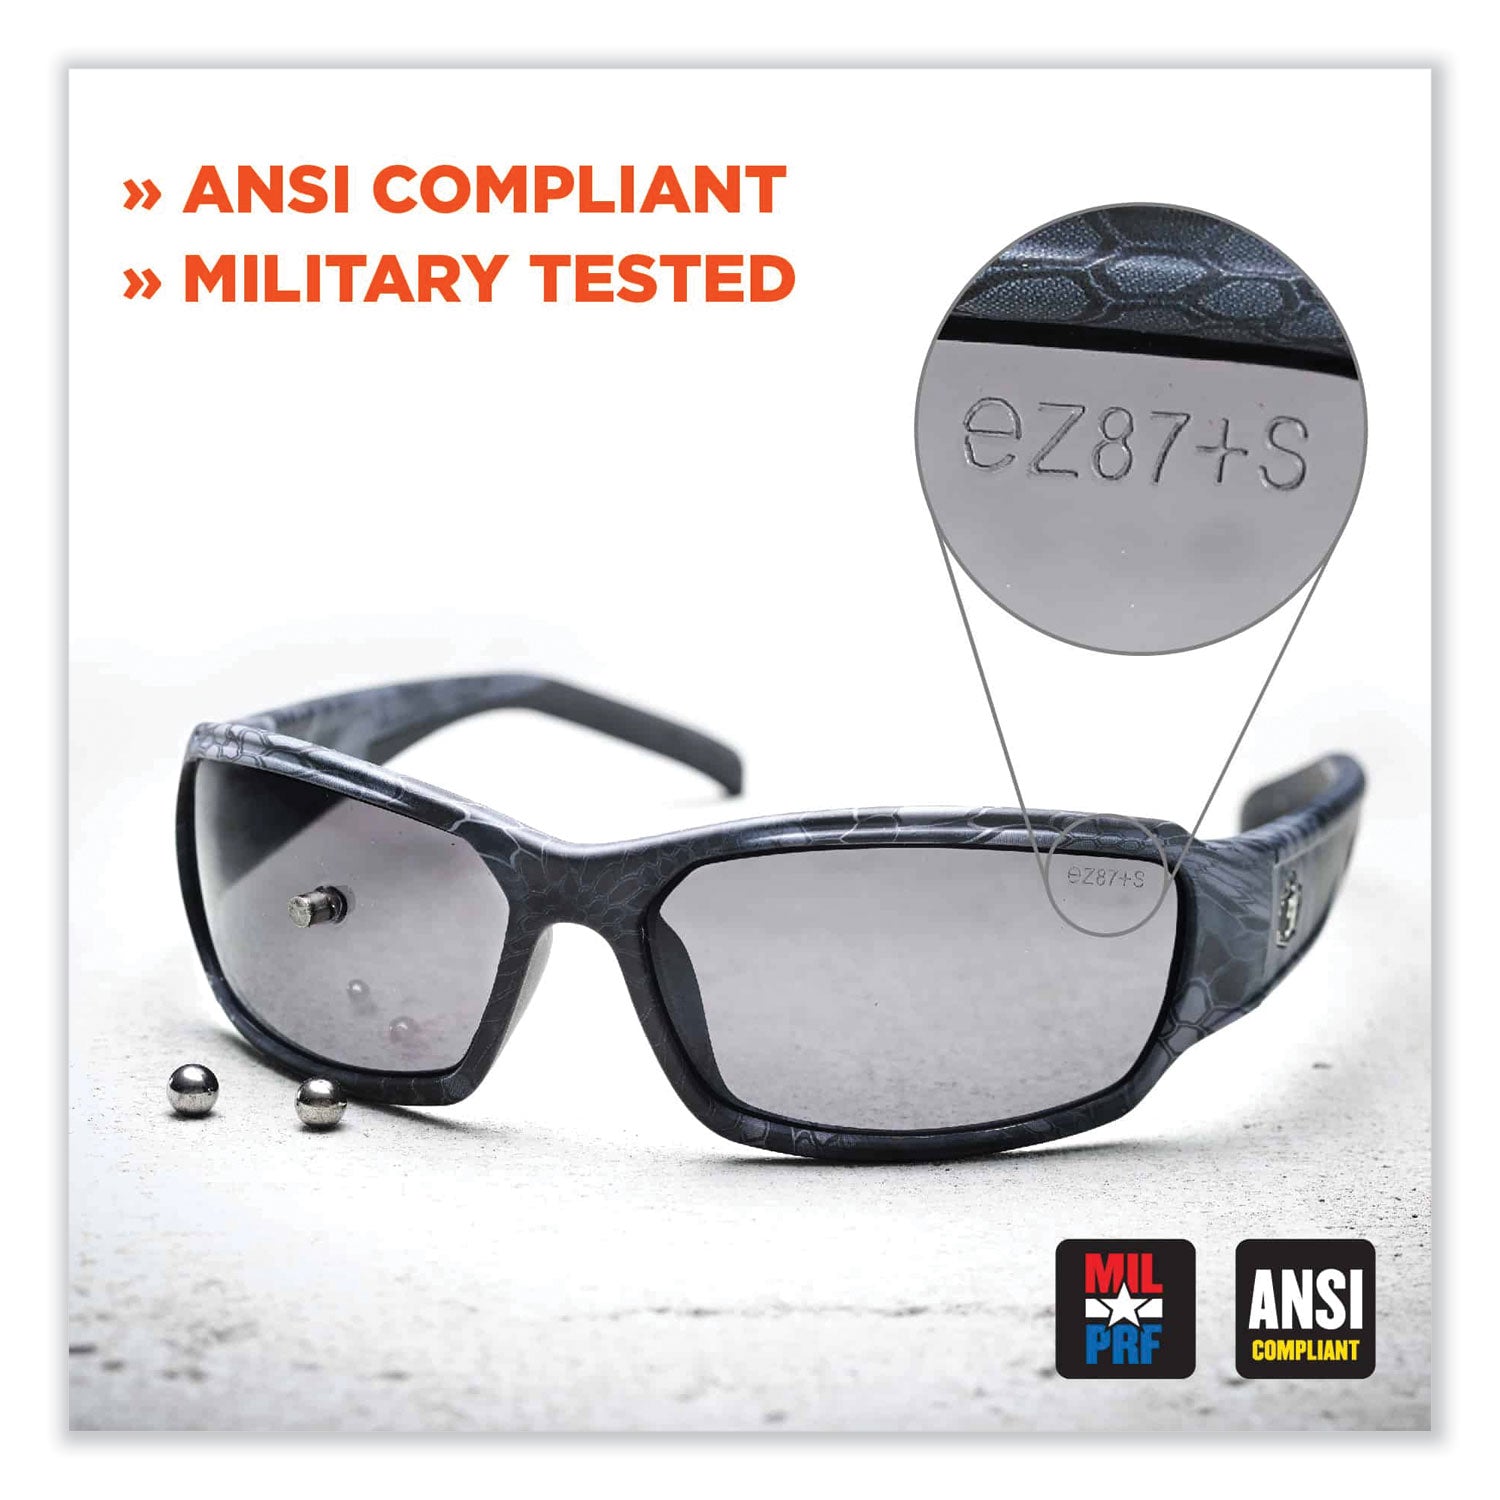 skullerz-dagr-safety-glasses-black-nylon-impact-frame-antifog-indoor-outdoor-polycarbonate-lens-ships-in-1-3-business-days_ego52483 - 8